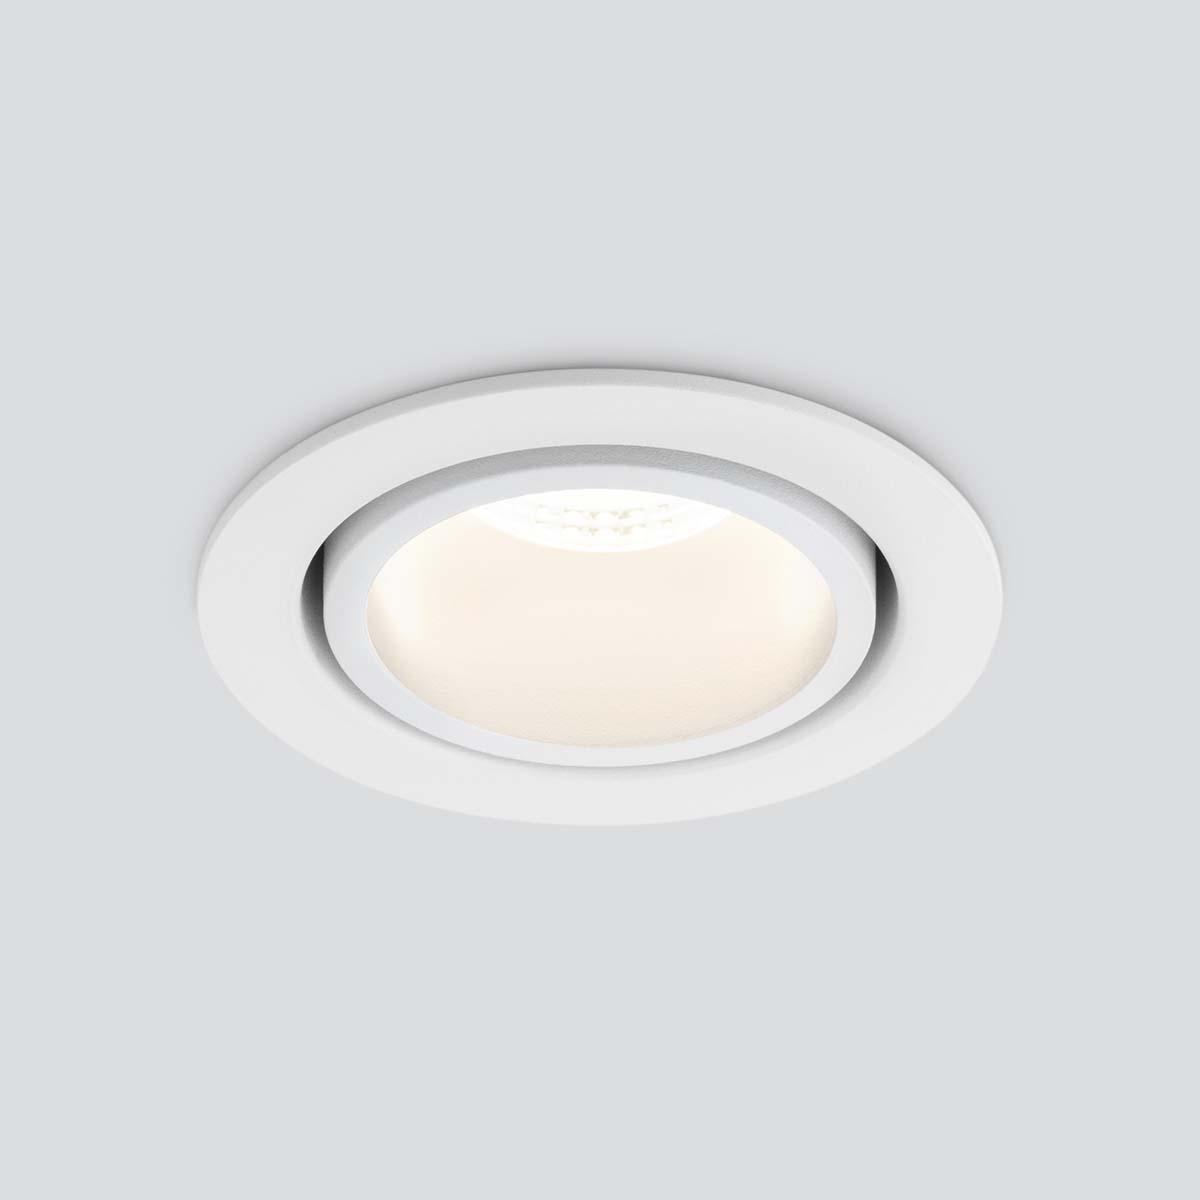 Встраиваемый светодиодный светильник Elektrostandard 15267/LED 7W 4200K белый/белый a055721